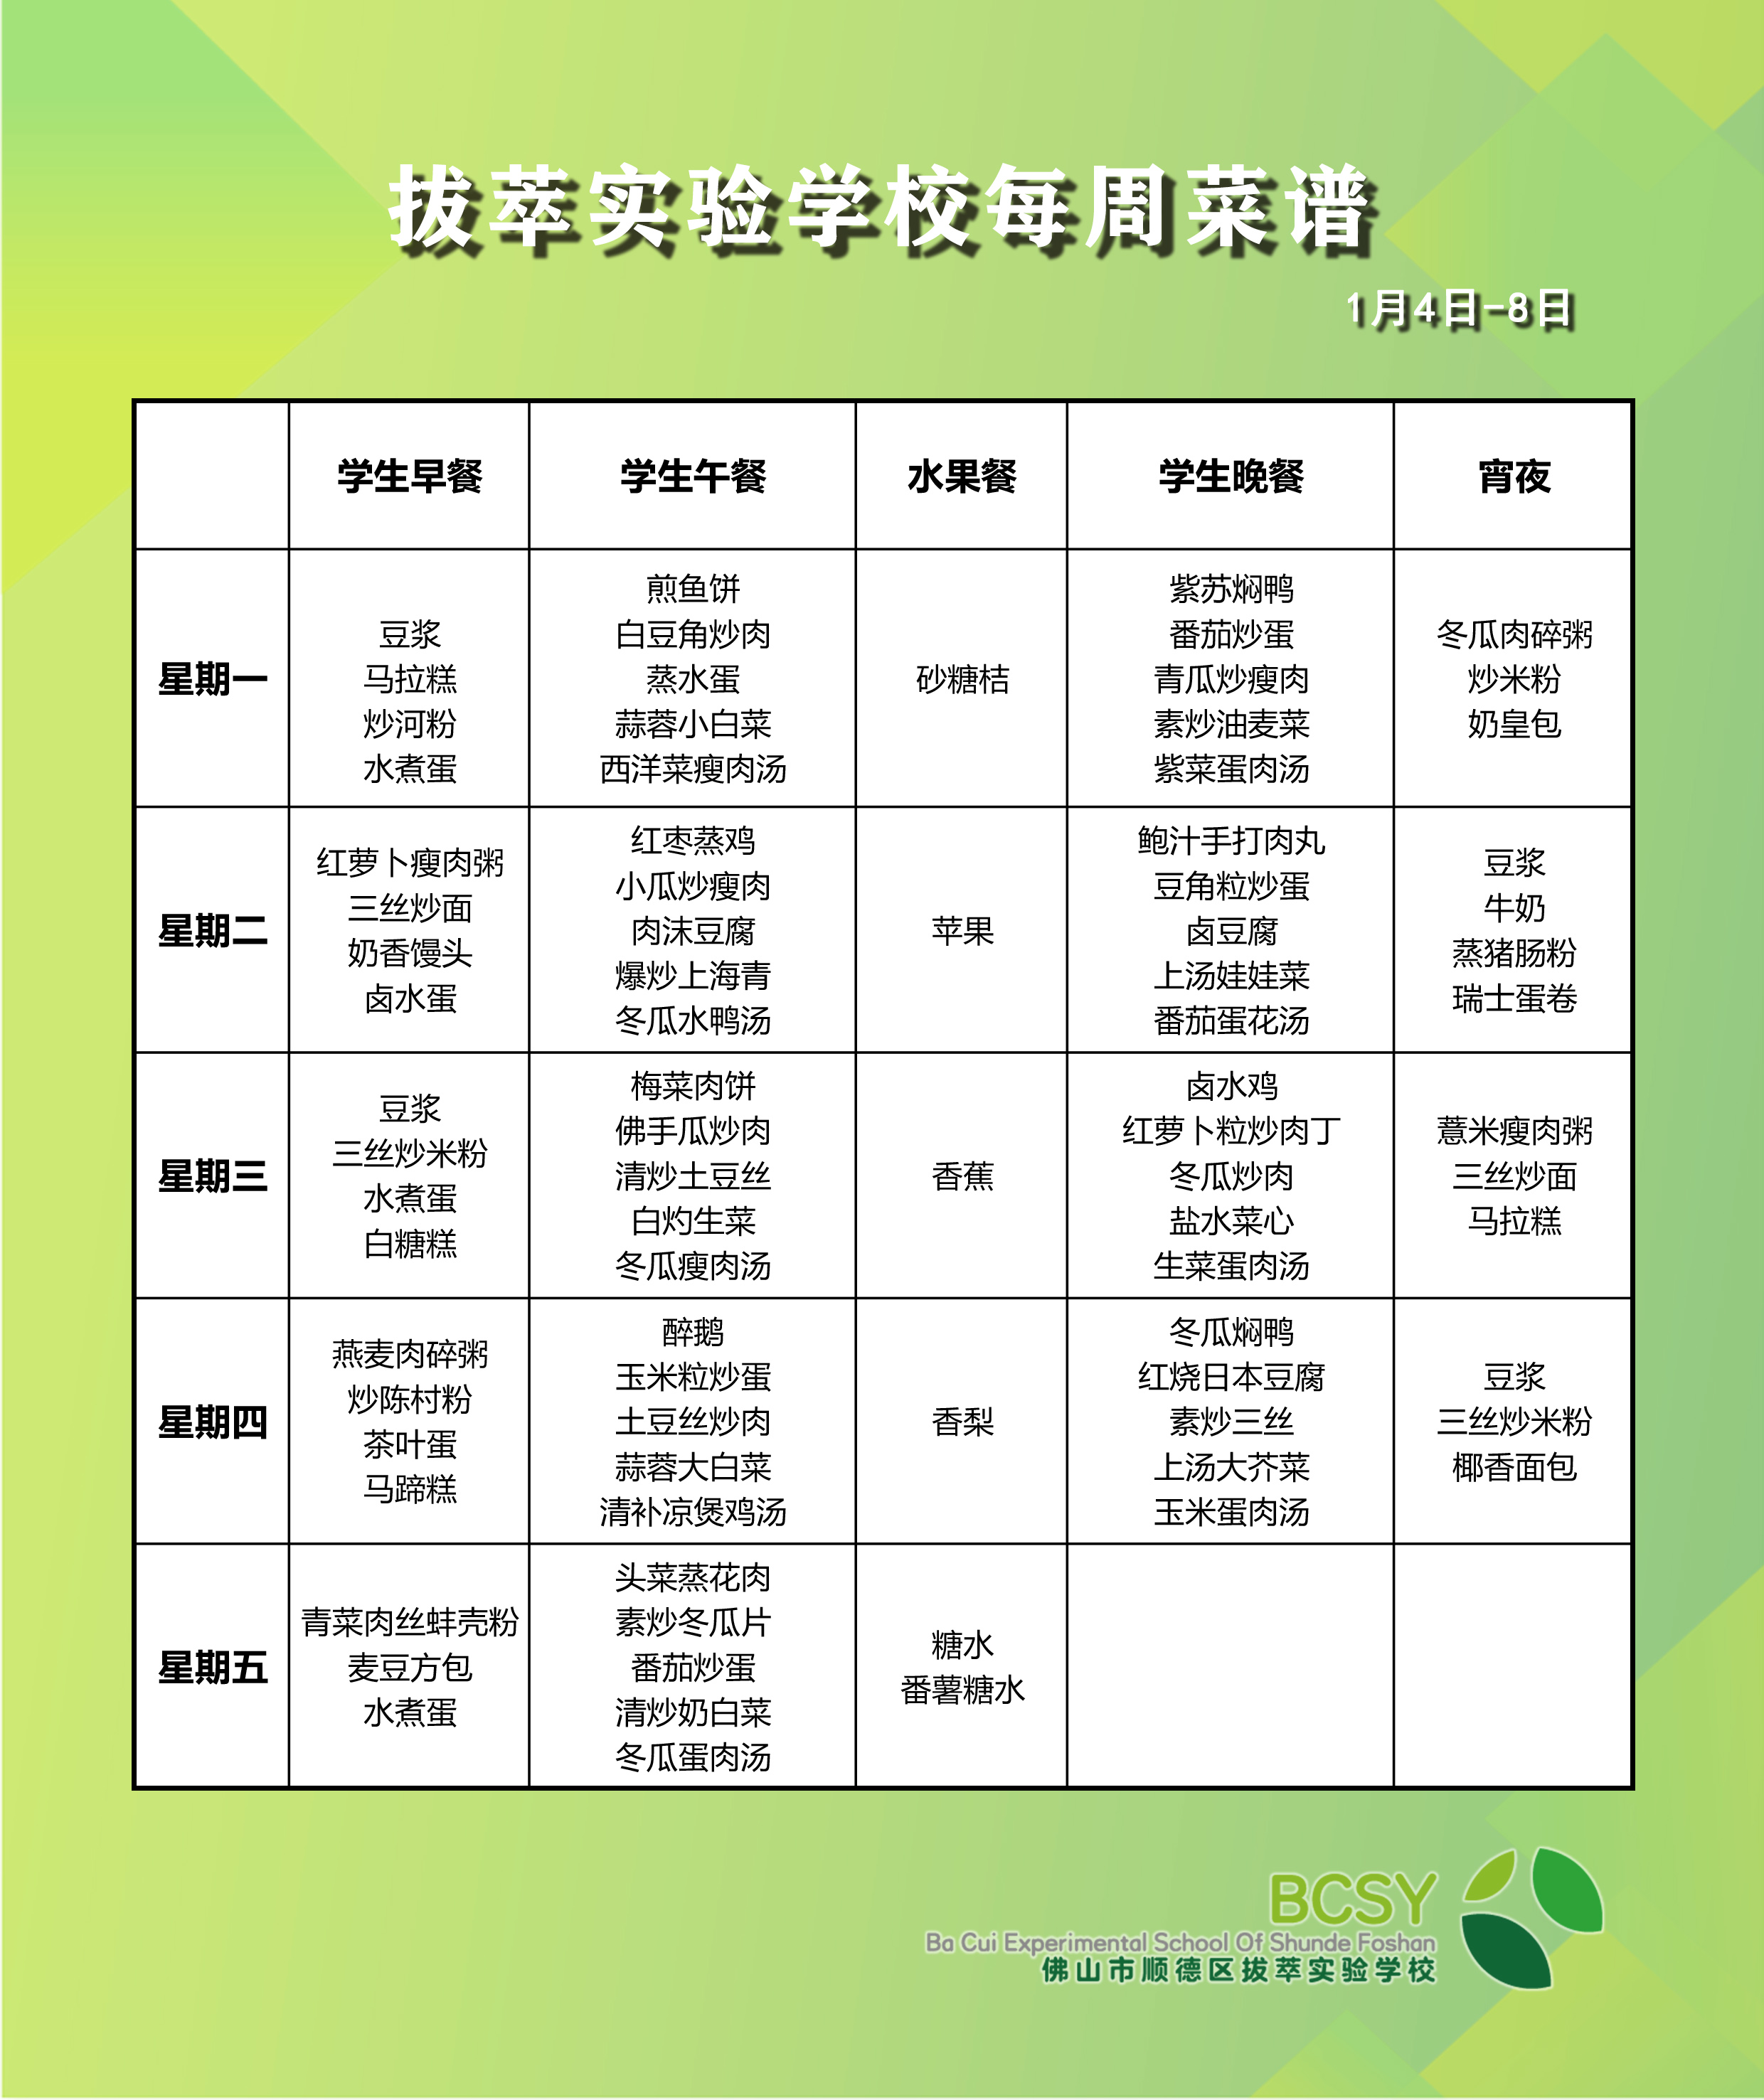 徐州市第一中学食堂负一楼学生餐厅量化菜谱公示(202106)-徐州市第一中学